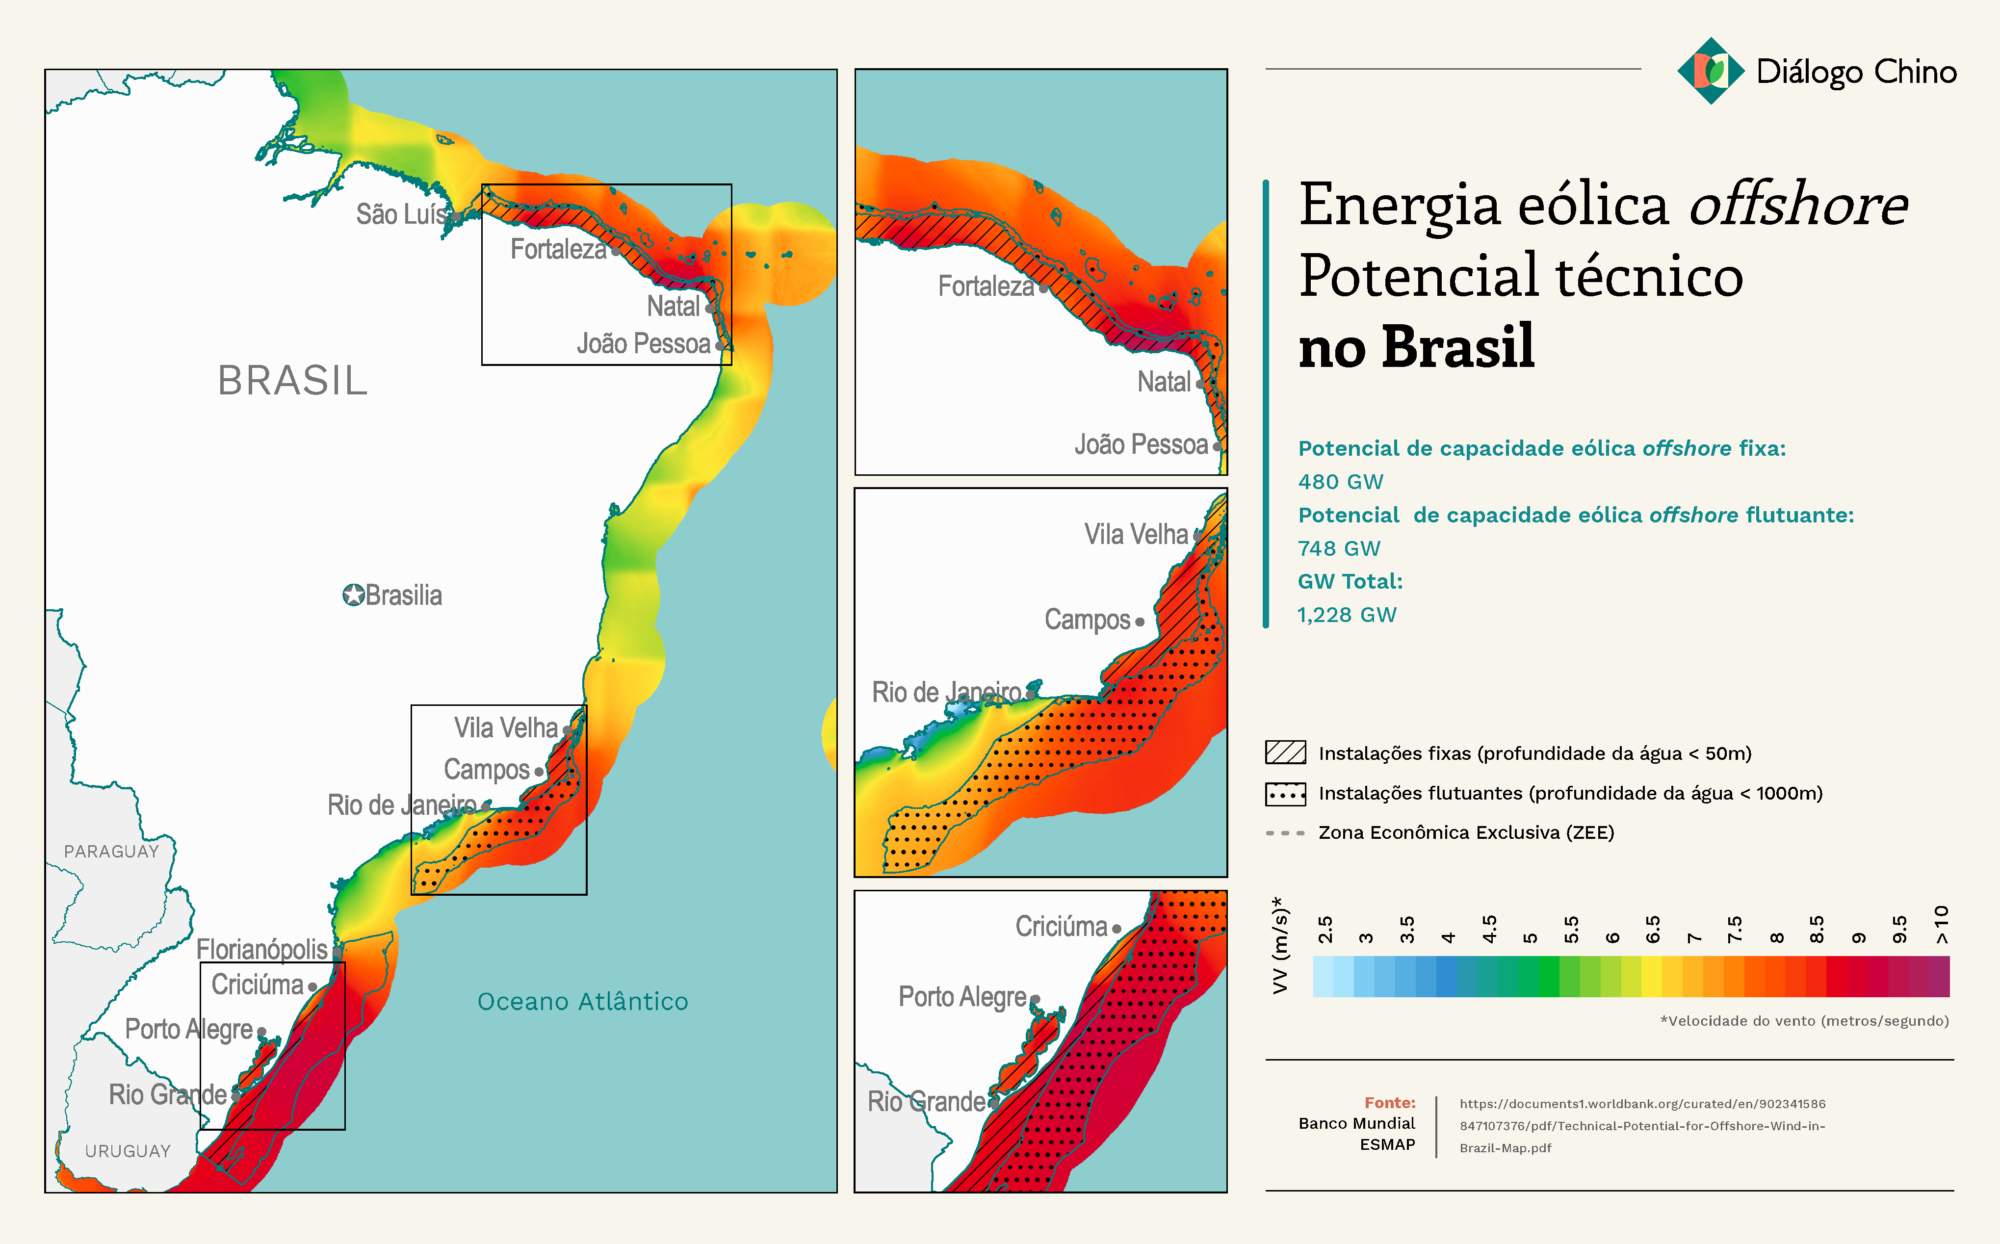 Mapa mostrando o potencial eólico offshore do Brasil